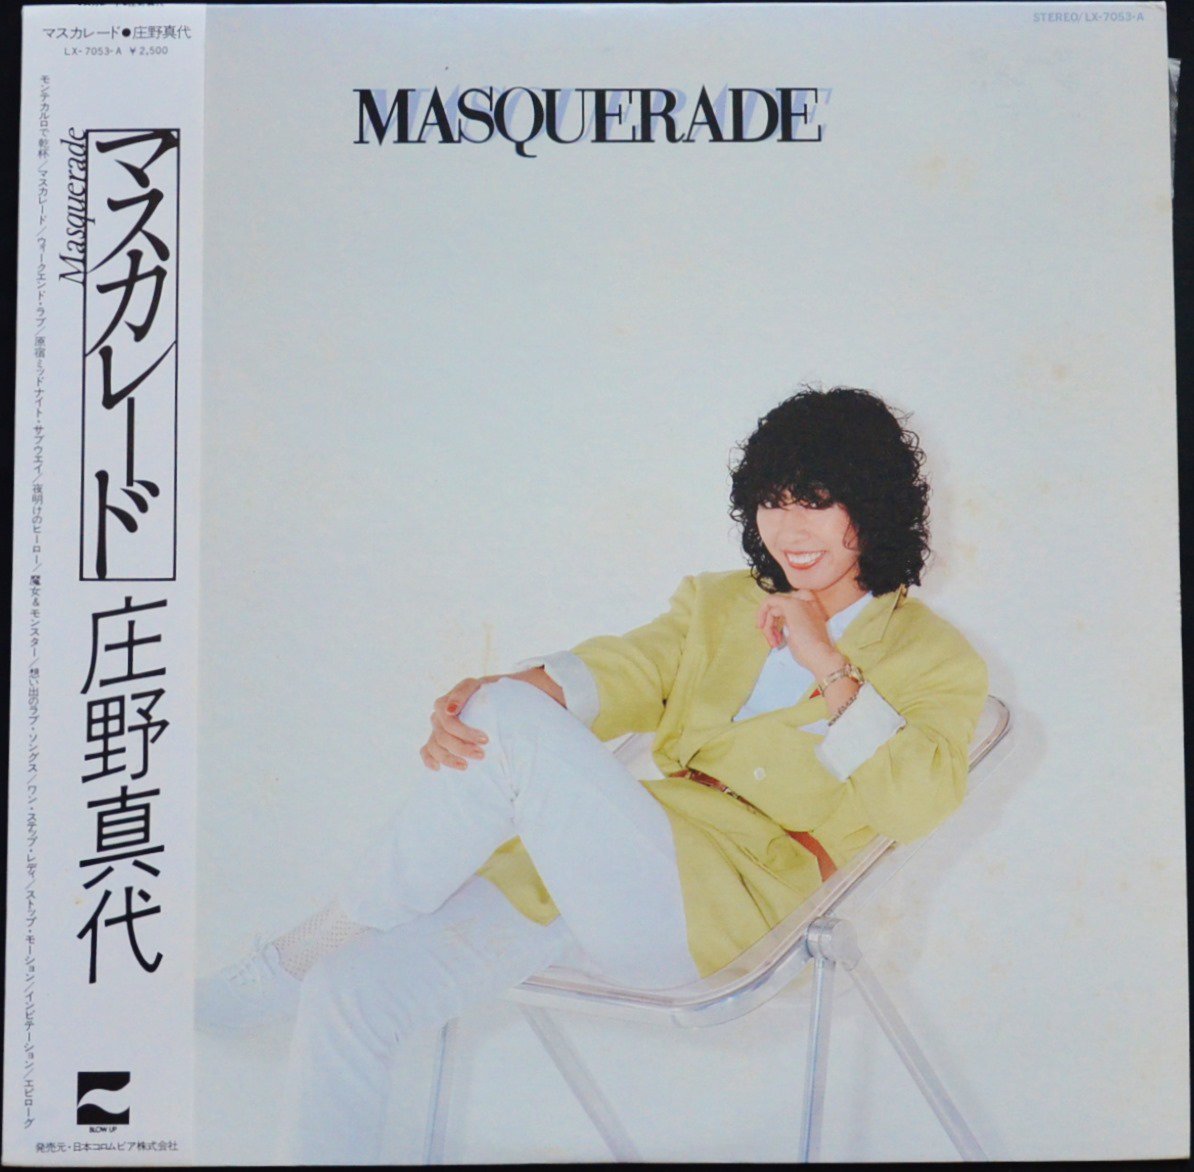 庄野真代 MAYO SHONO / マスカレード MASQUERADE (LP) - HIP TANK RECORDS